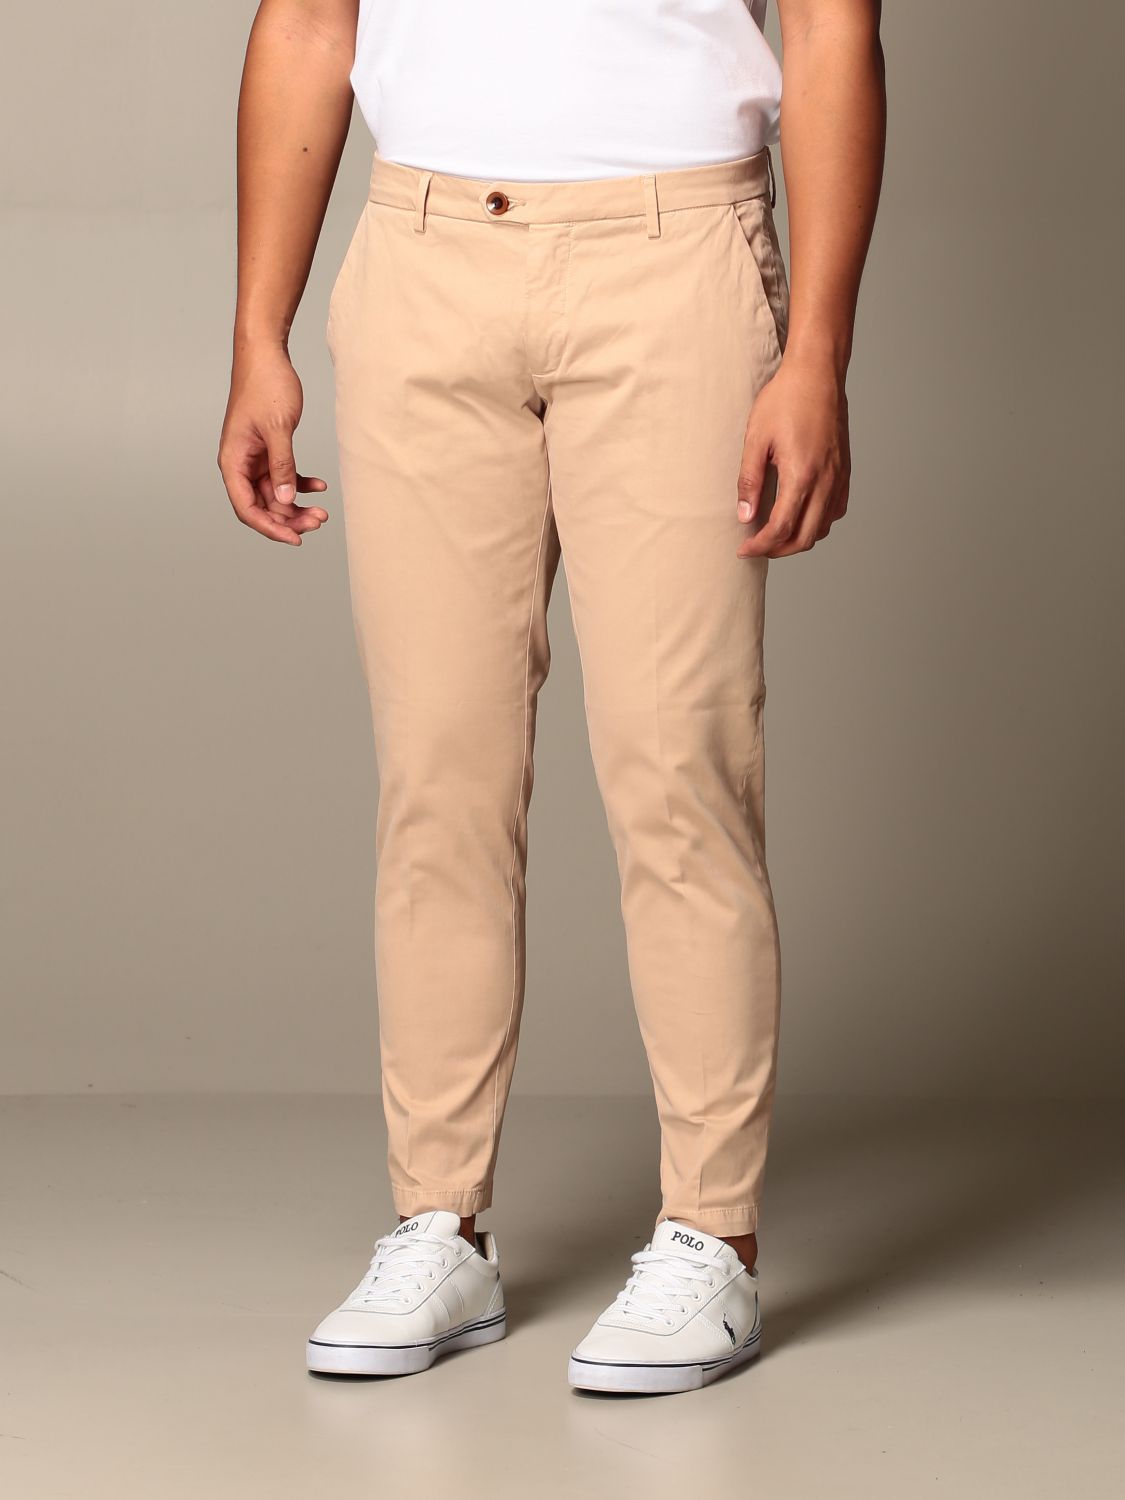 Pantalone Rudolph in raso stretch slim fit Giglio.com Uomo Abbigliamento Pantaloni e jeans Pantaloni Pantaloni stretch 